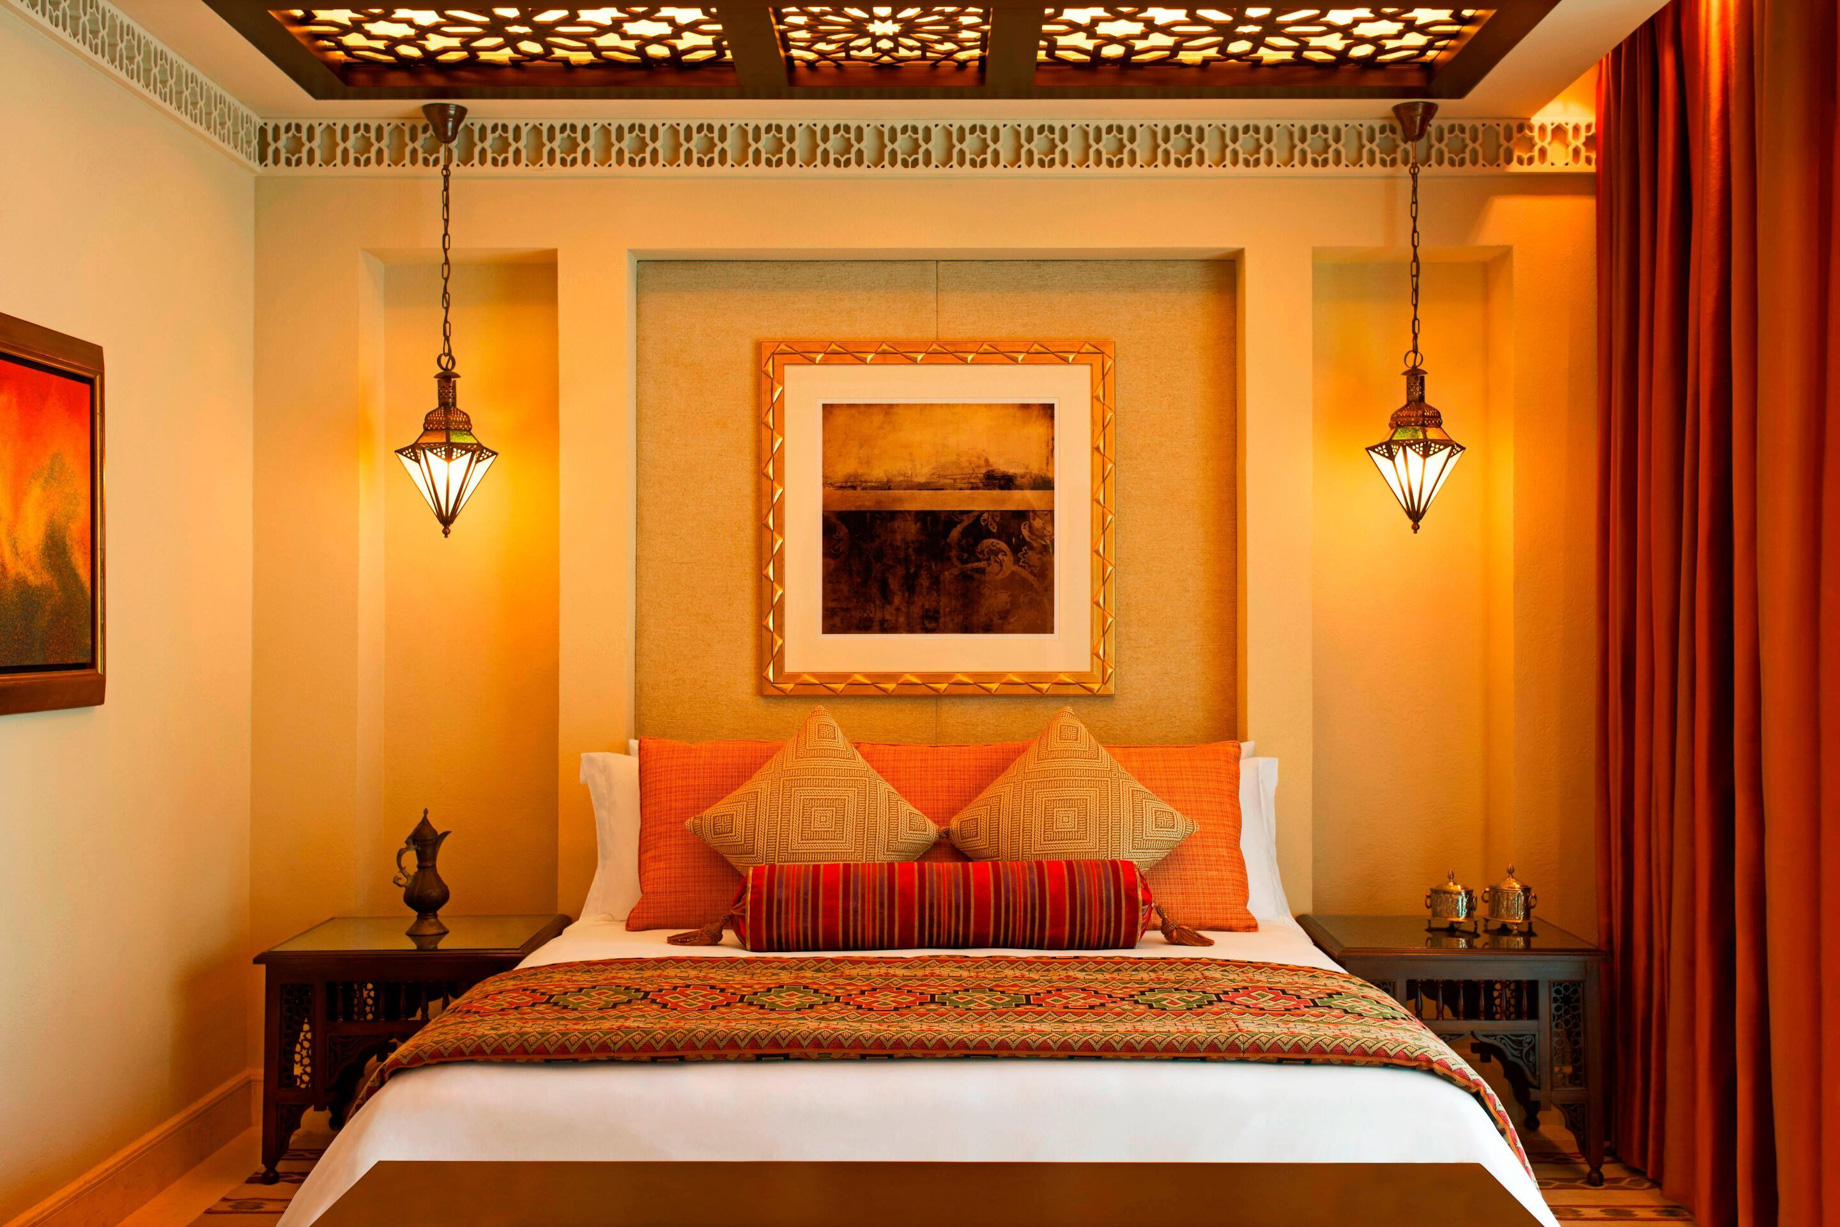 The St. Regis Saadiyat Island Resort – Abu Dhabi, UAE – Moroccan Spa Suite Bedroom